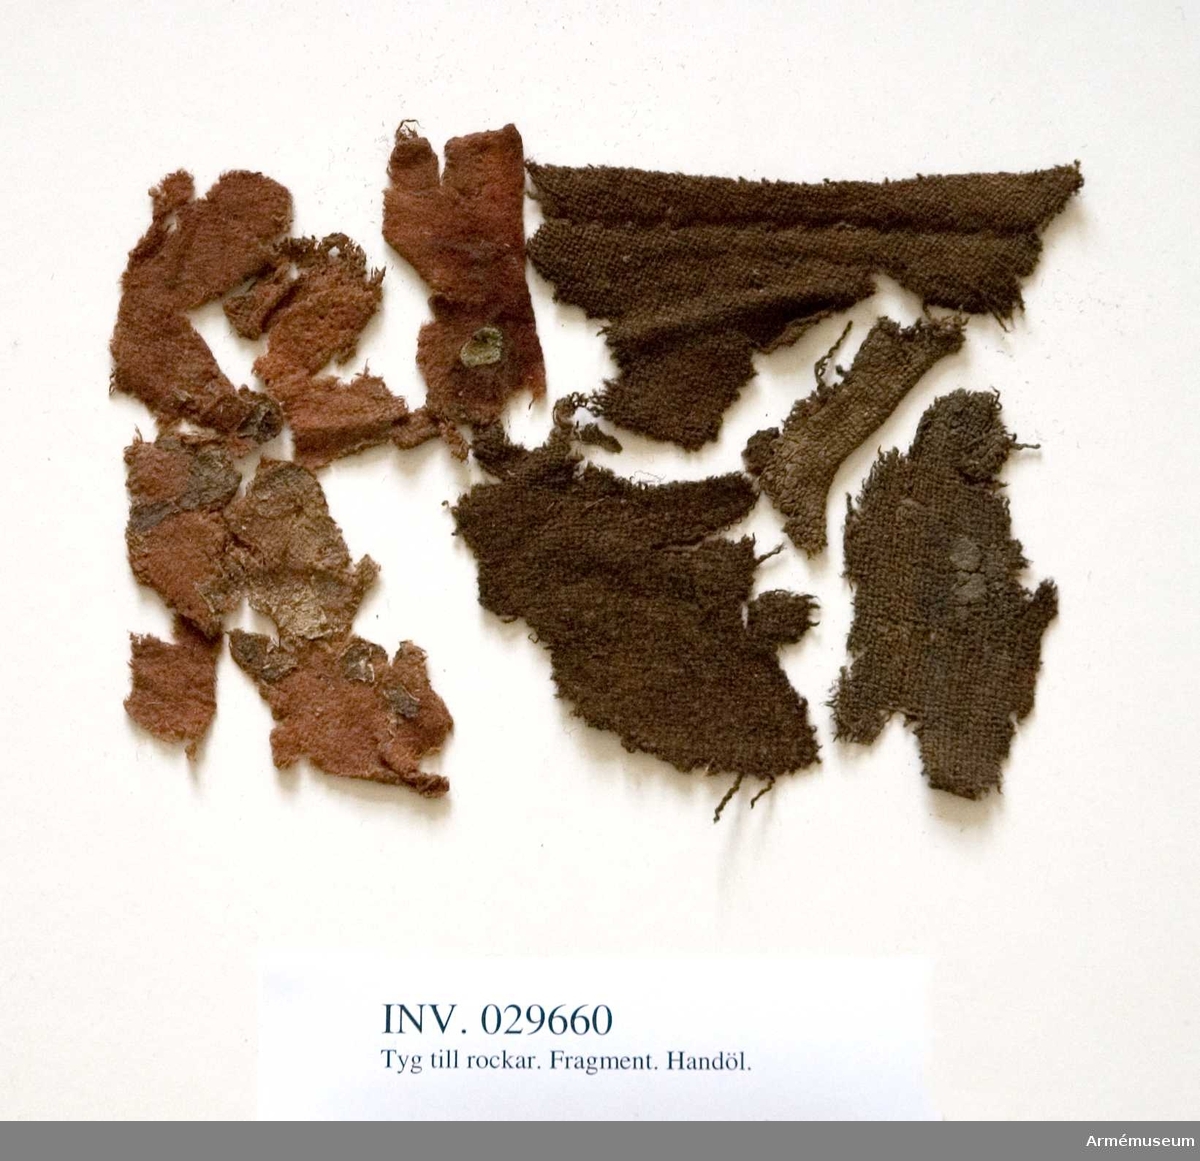 Grupp C I
Karolinerfynd från Handöl. Rödbruna och mörkbruna fragment med rester av jord.

Samhörande fynd: AM.11462-3, 29660-75